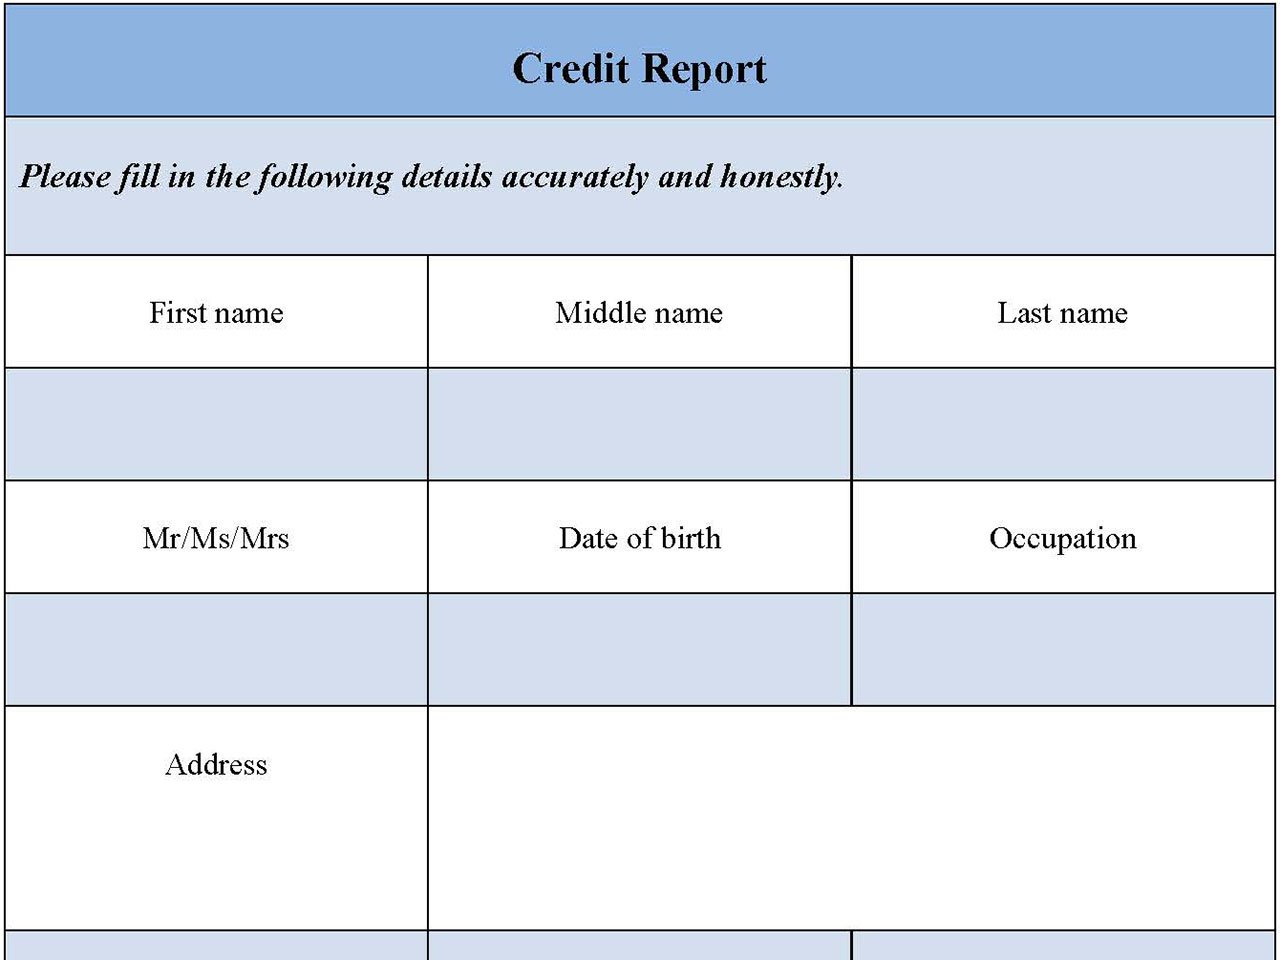 Credit Report Form